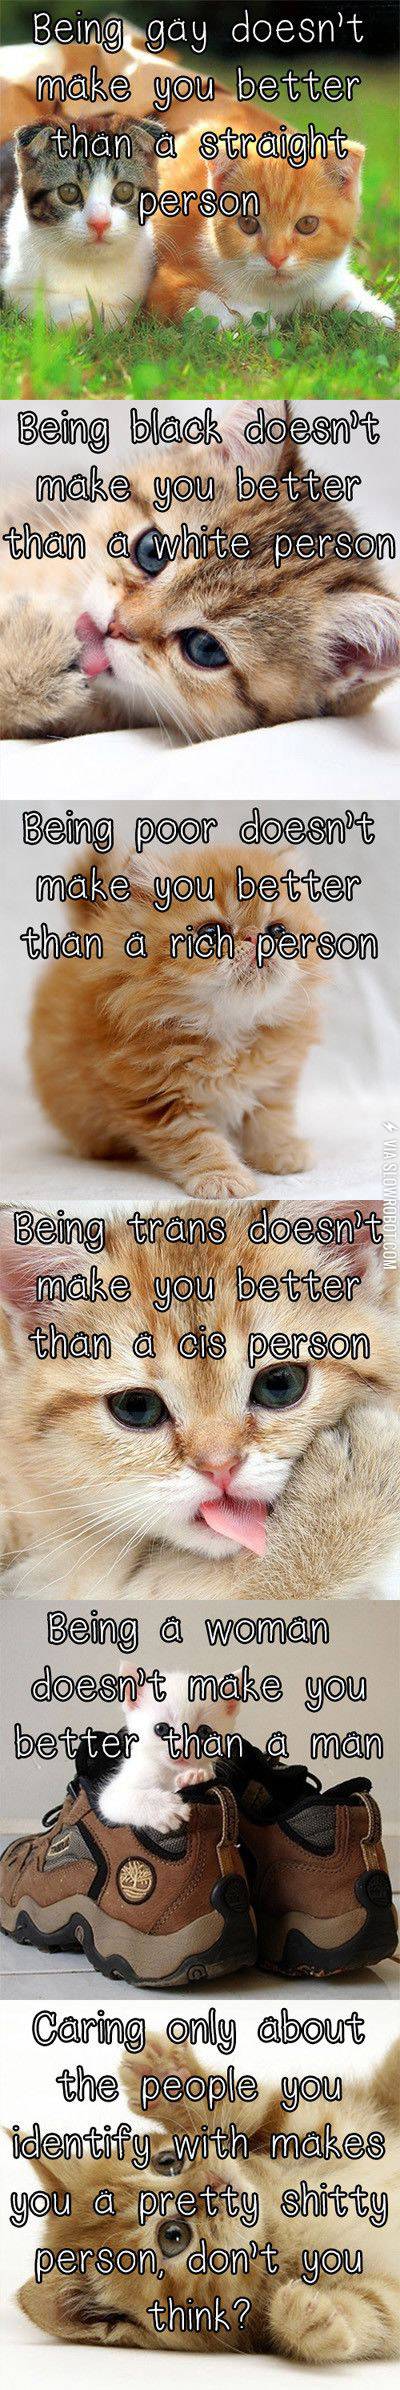 Kittens+that+speak+the+truth.